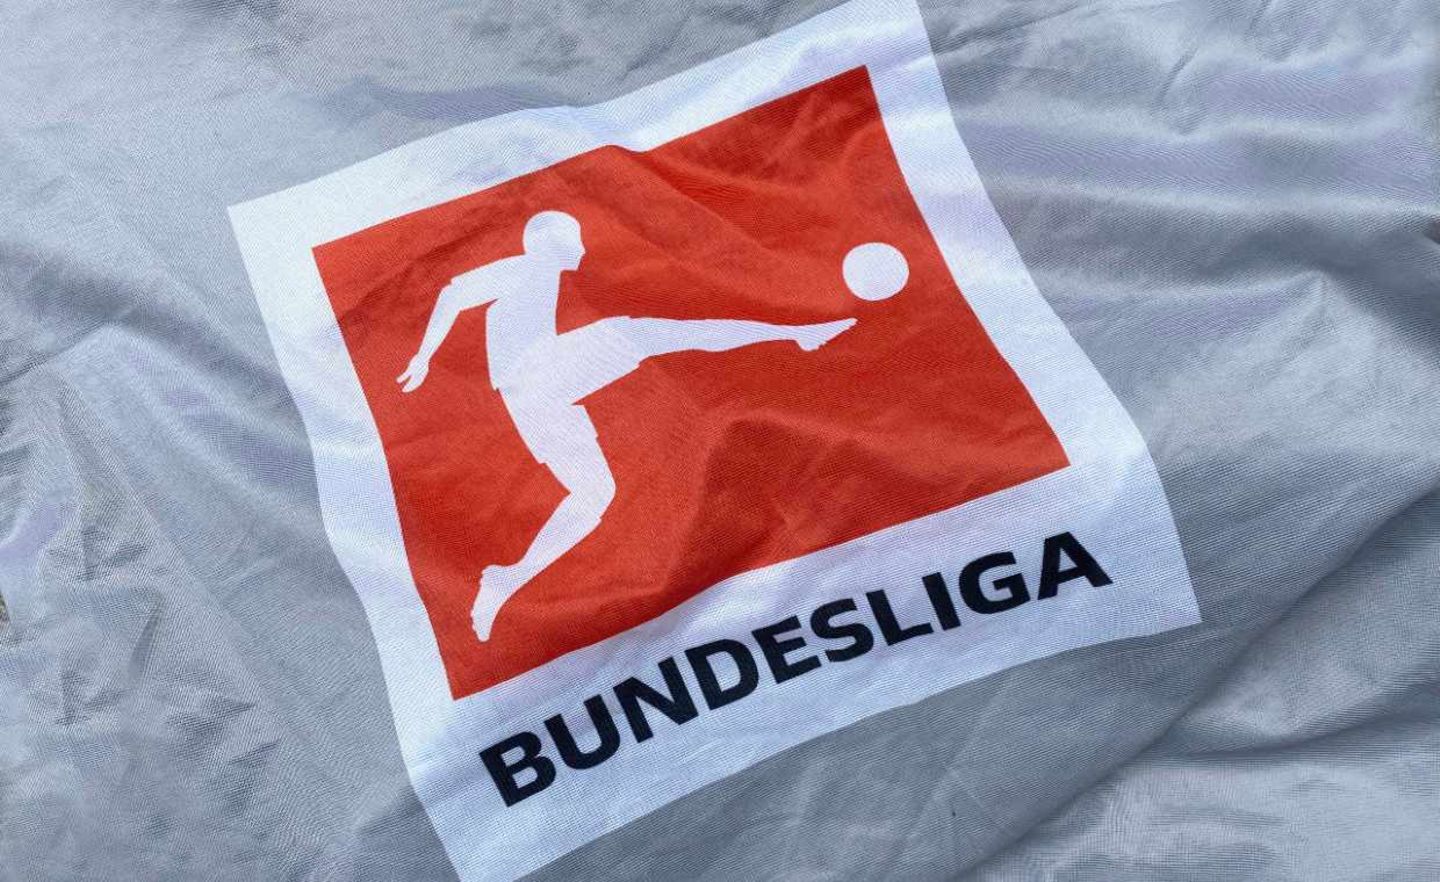 Ab dem 16. Mai setzt die Bundesliga ihre Saison mit Geisterspielen fort.